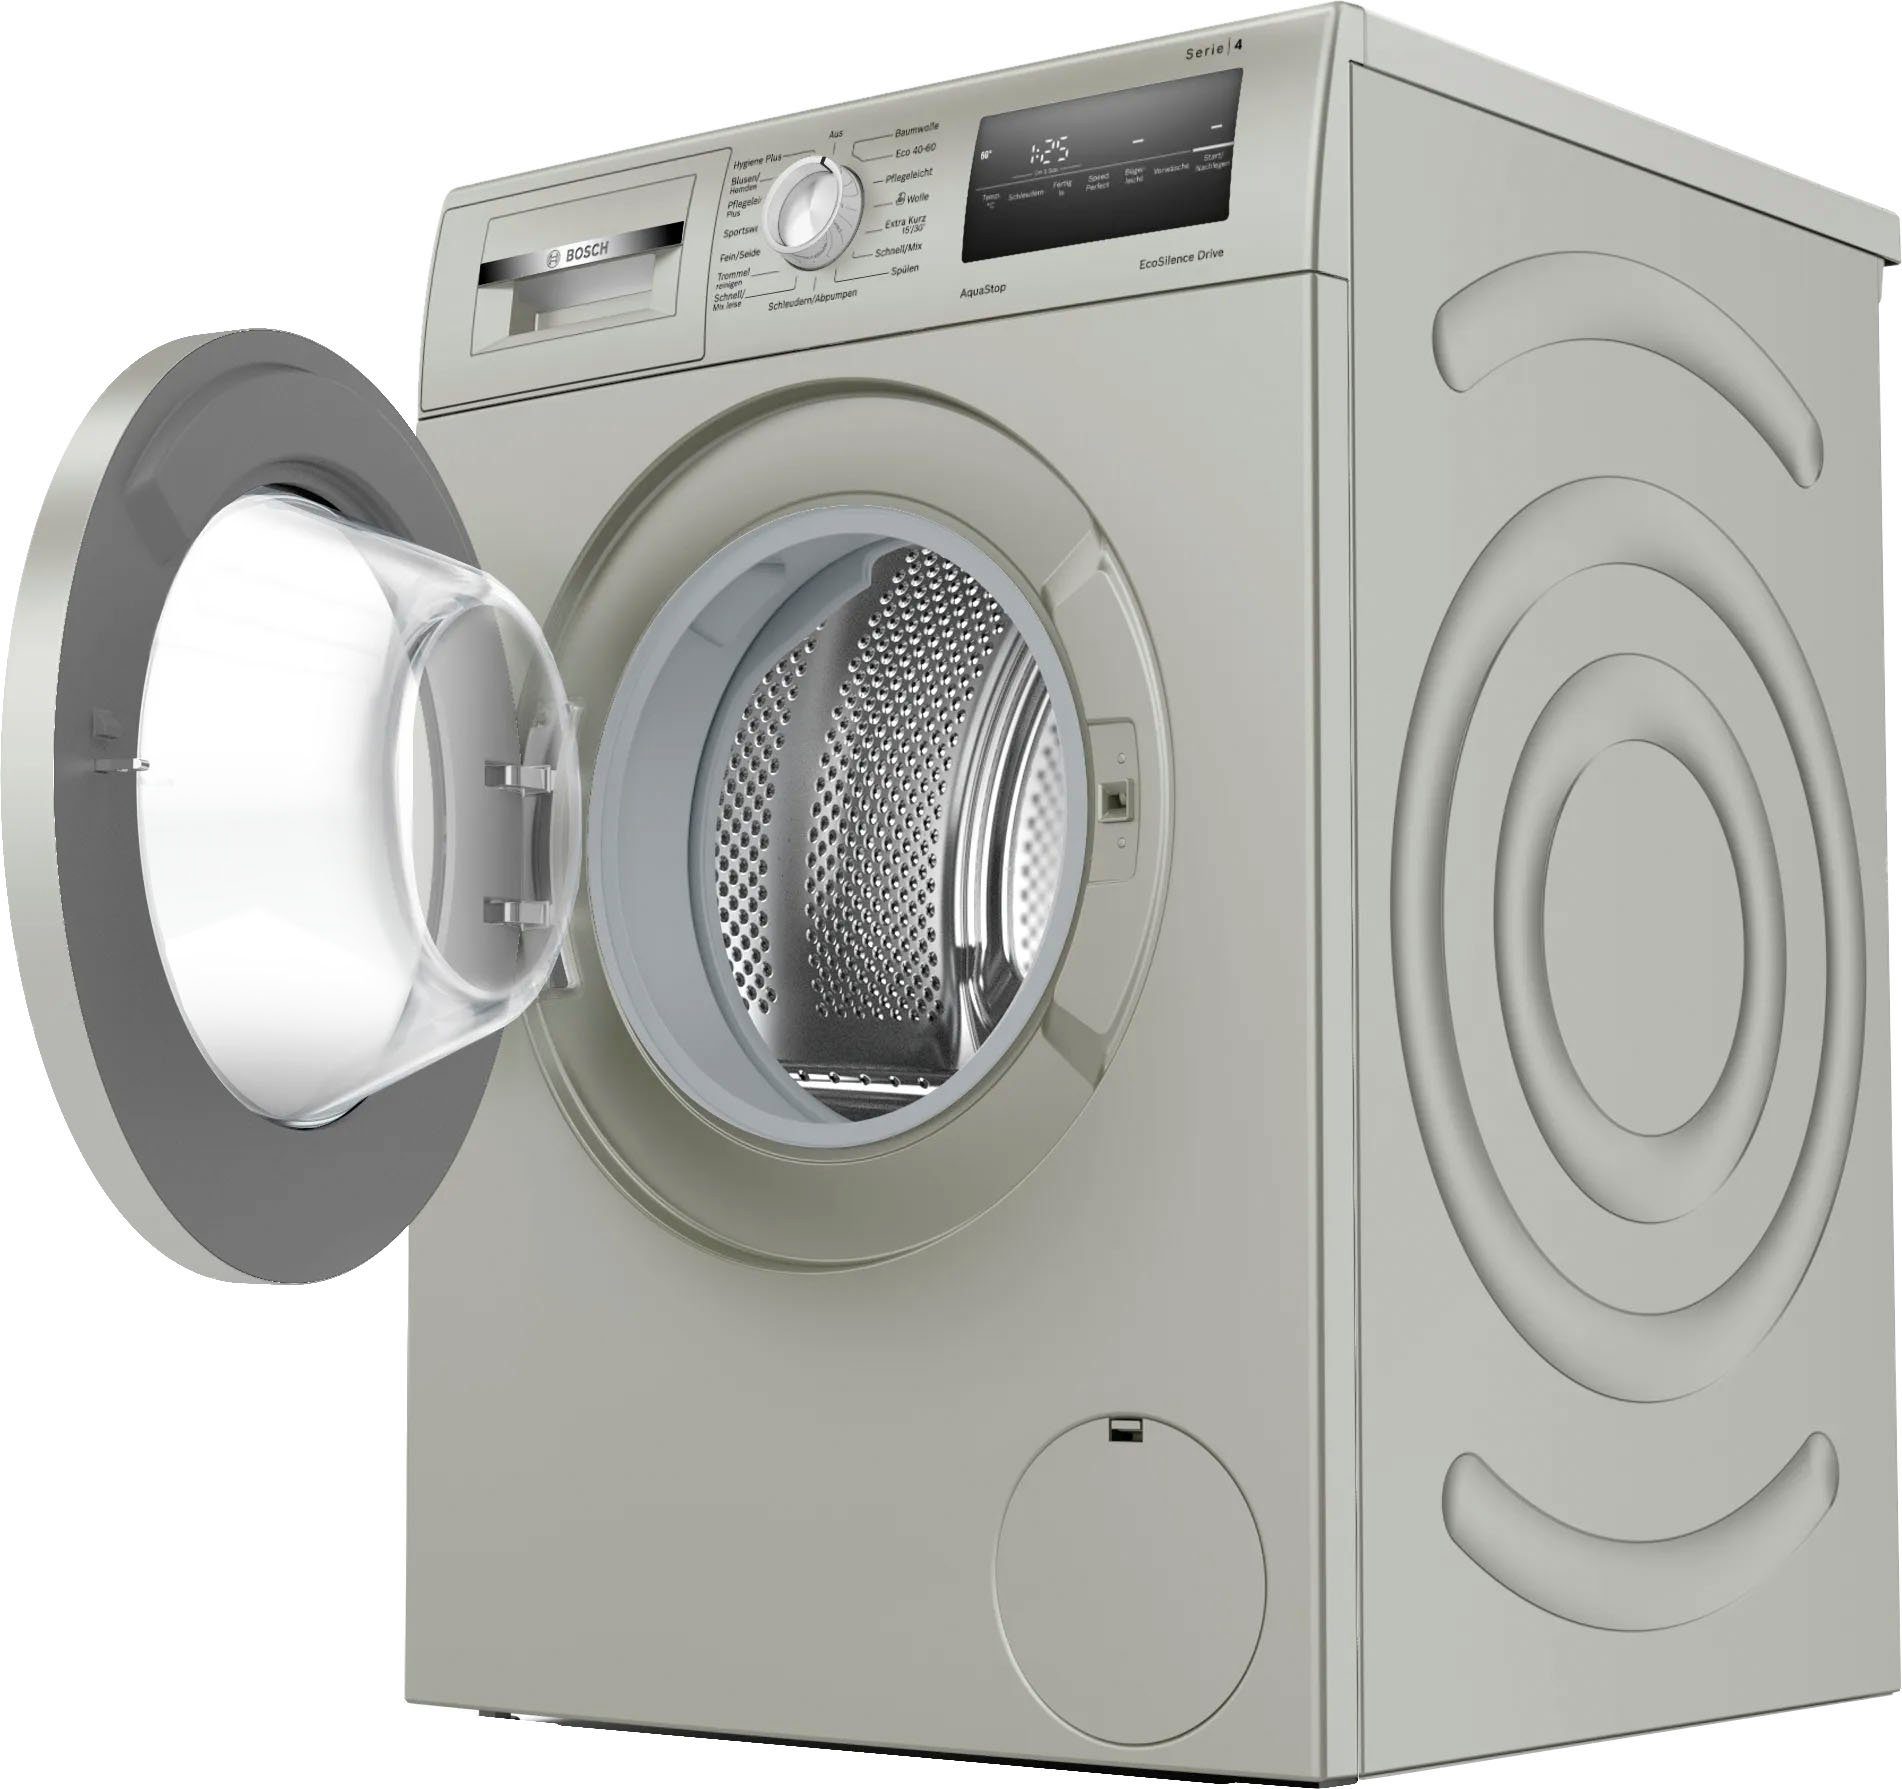 Mode liefern BOSCH Waschmaschine Serie 4 WAN282X3, ein Drive™: Silence und Eco kg, Waschmaschinenantrieb robust so U/min, effizient 7 1400 muss